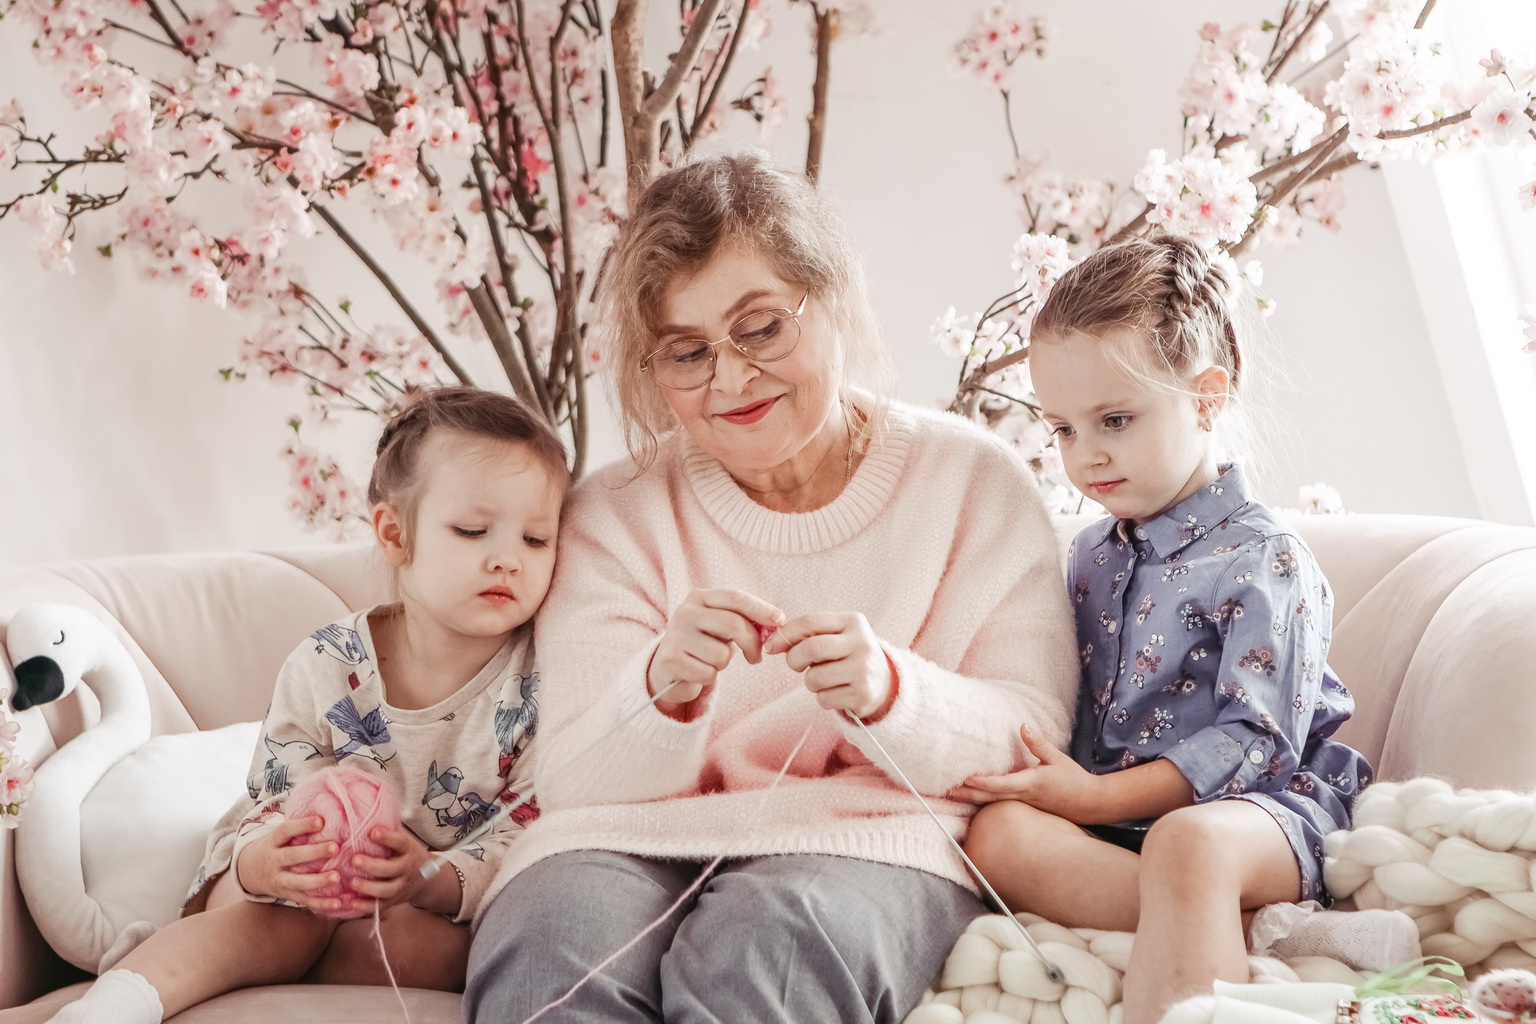 Комментарий к фото бабушки с внуками